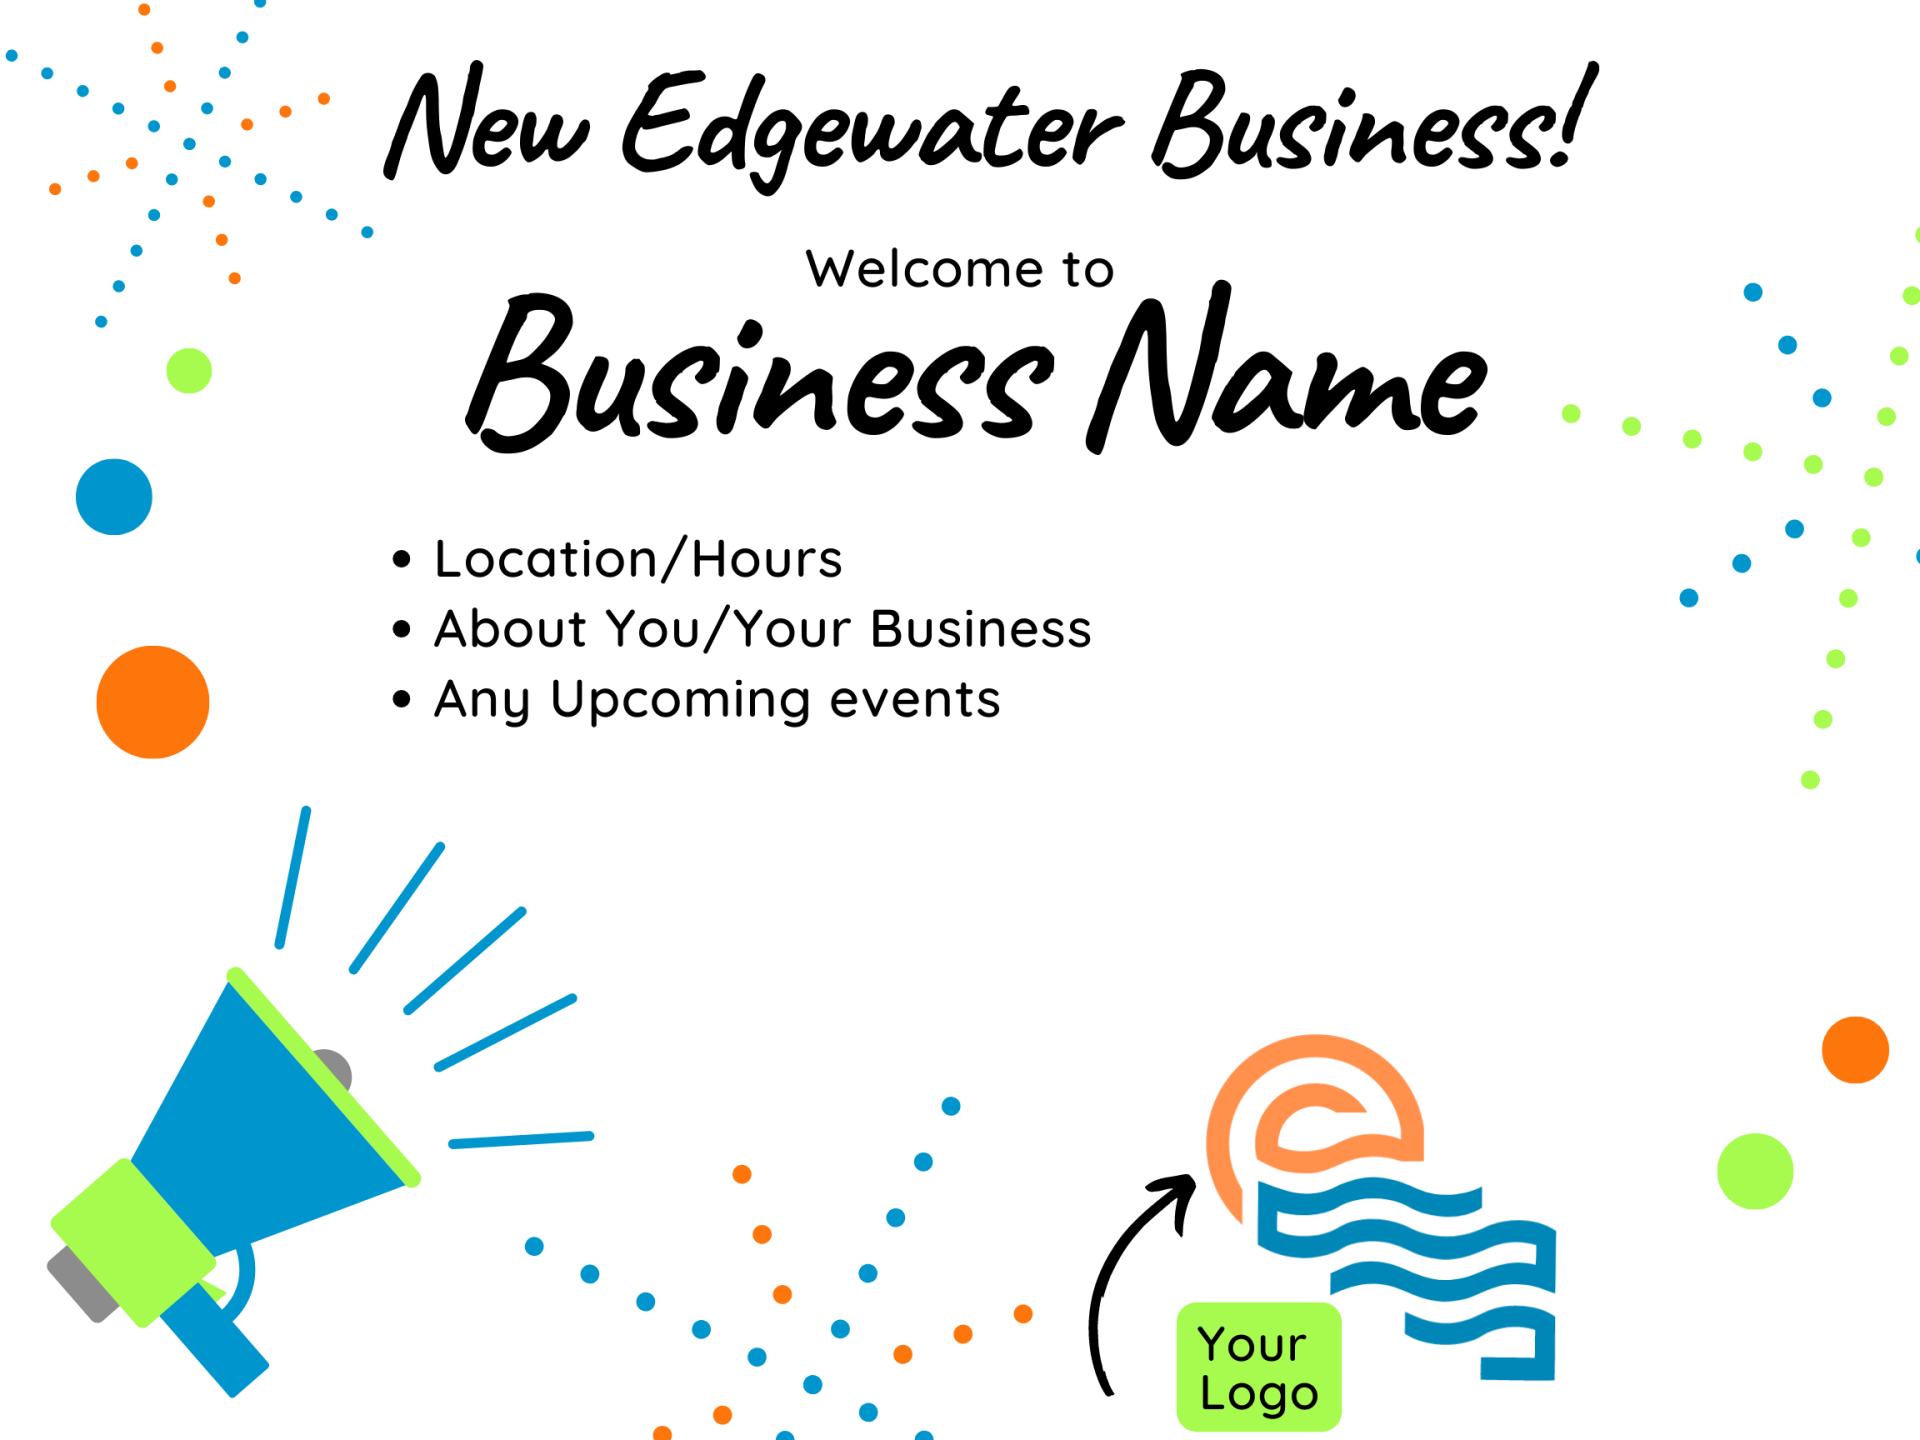 New Edgewater Business